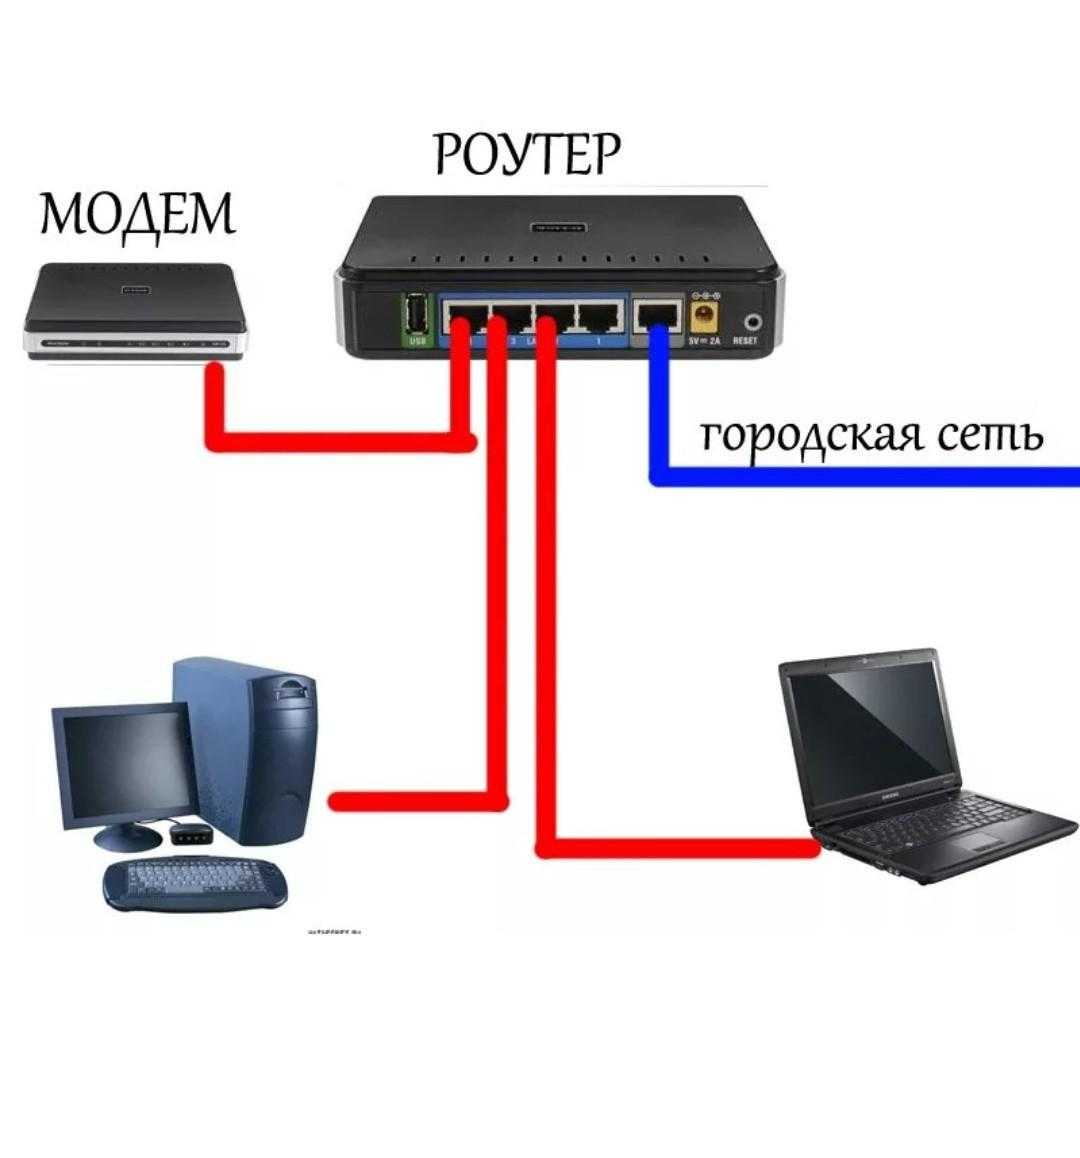 Подключить роутер к интернету по кабелю. Как подключается модем к компьютеру. Схема подключения модема. Как подключить второй компьютер к интернету через кабель к роутеру. Провод для подключения модема к роутеру.